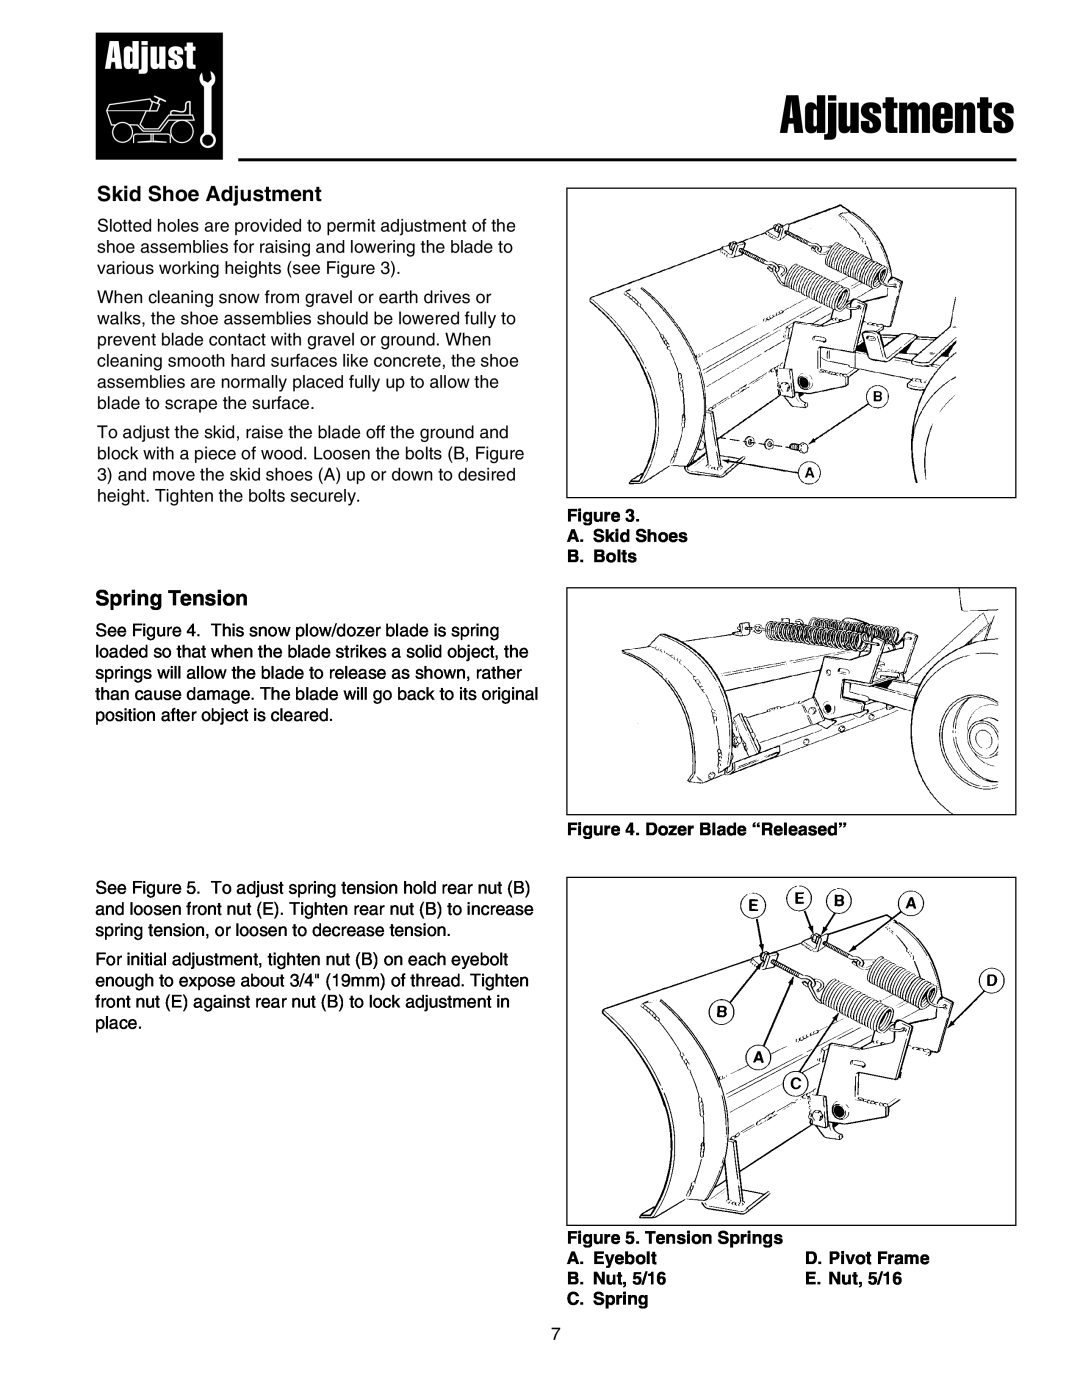 Snapper 1721303-01 manual Adjustments, Skid Shoe Adjustment, Spring Tension 